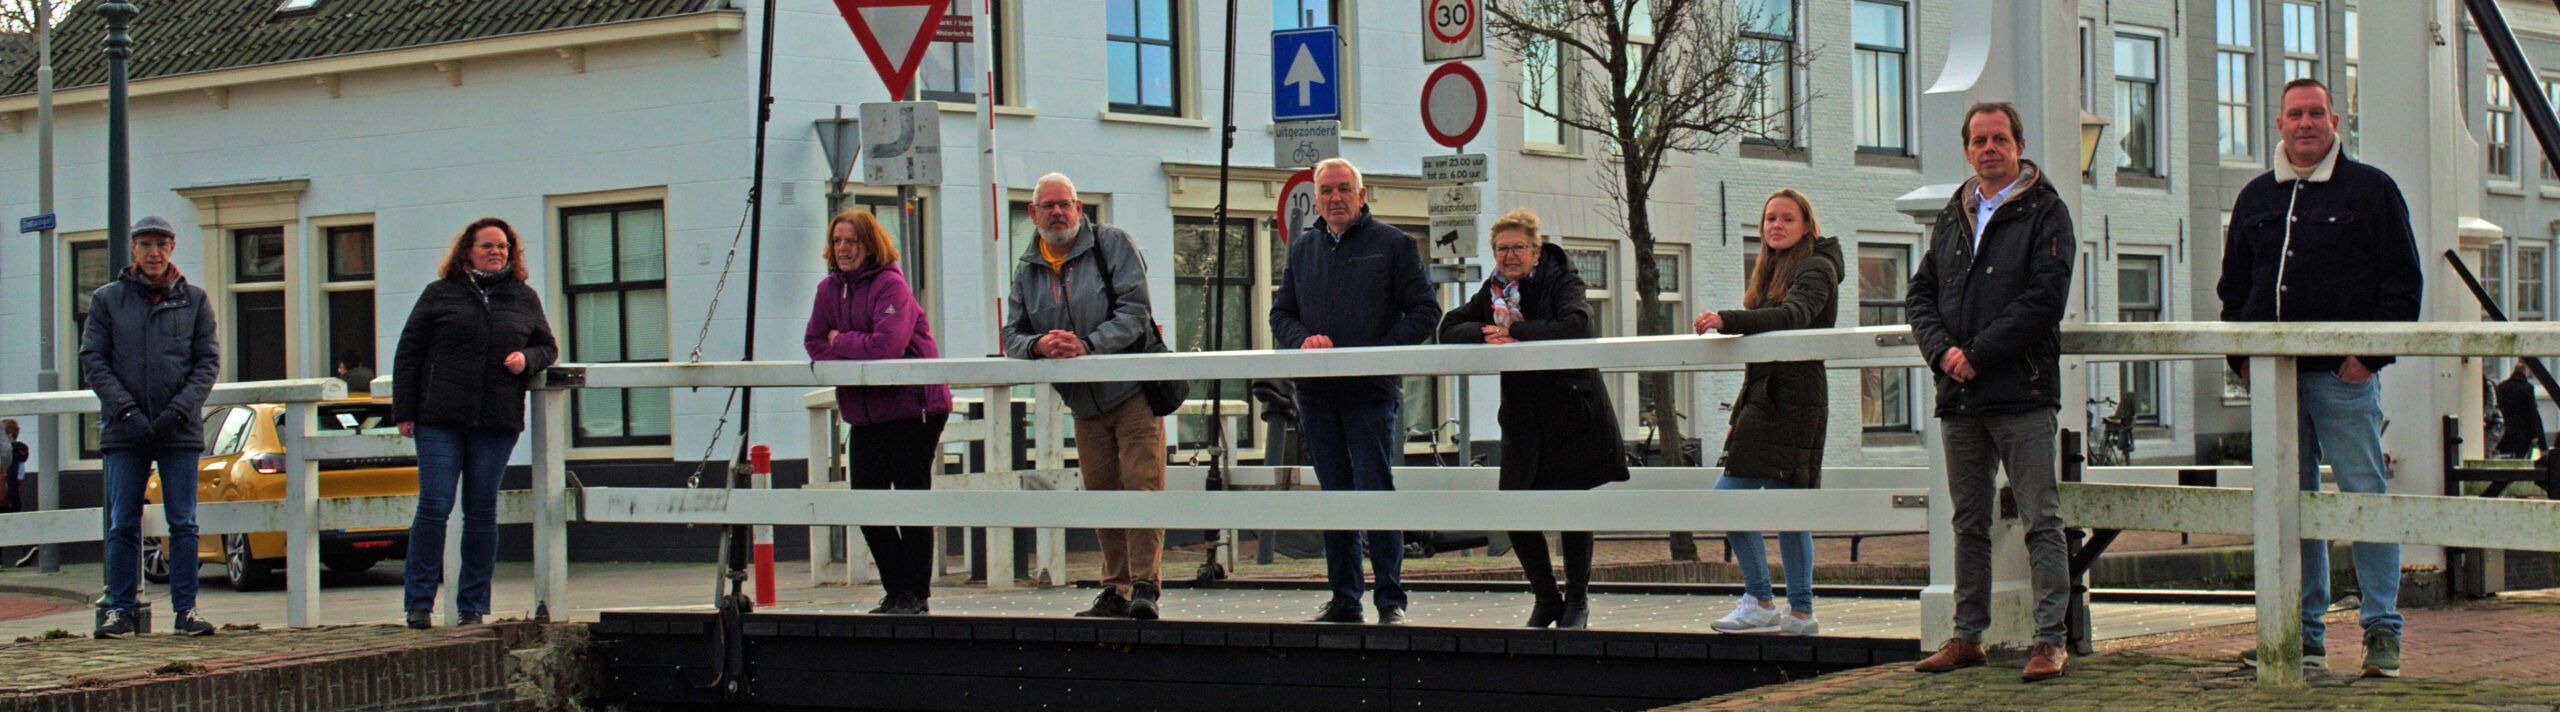 Van links naar rechts : Floor van Lamoen, Gonneke de Boe - Hoogerland, Carmen Schoe, Ferdi Korsuize, Leen van Zon,  Marian van Heugten – van den Burg, Joyce Vuijk – Meulblok, Stan Meulblok, Patrick Geus.